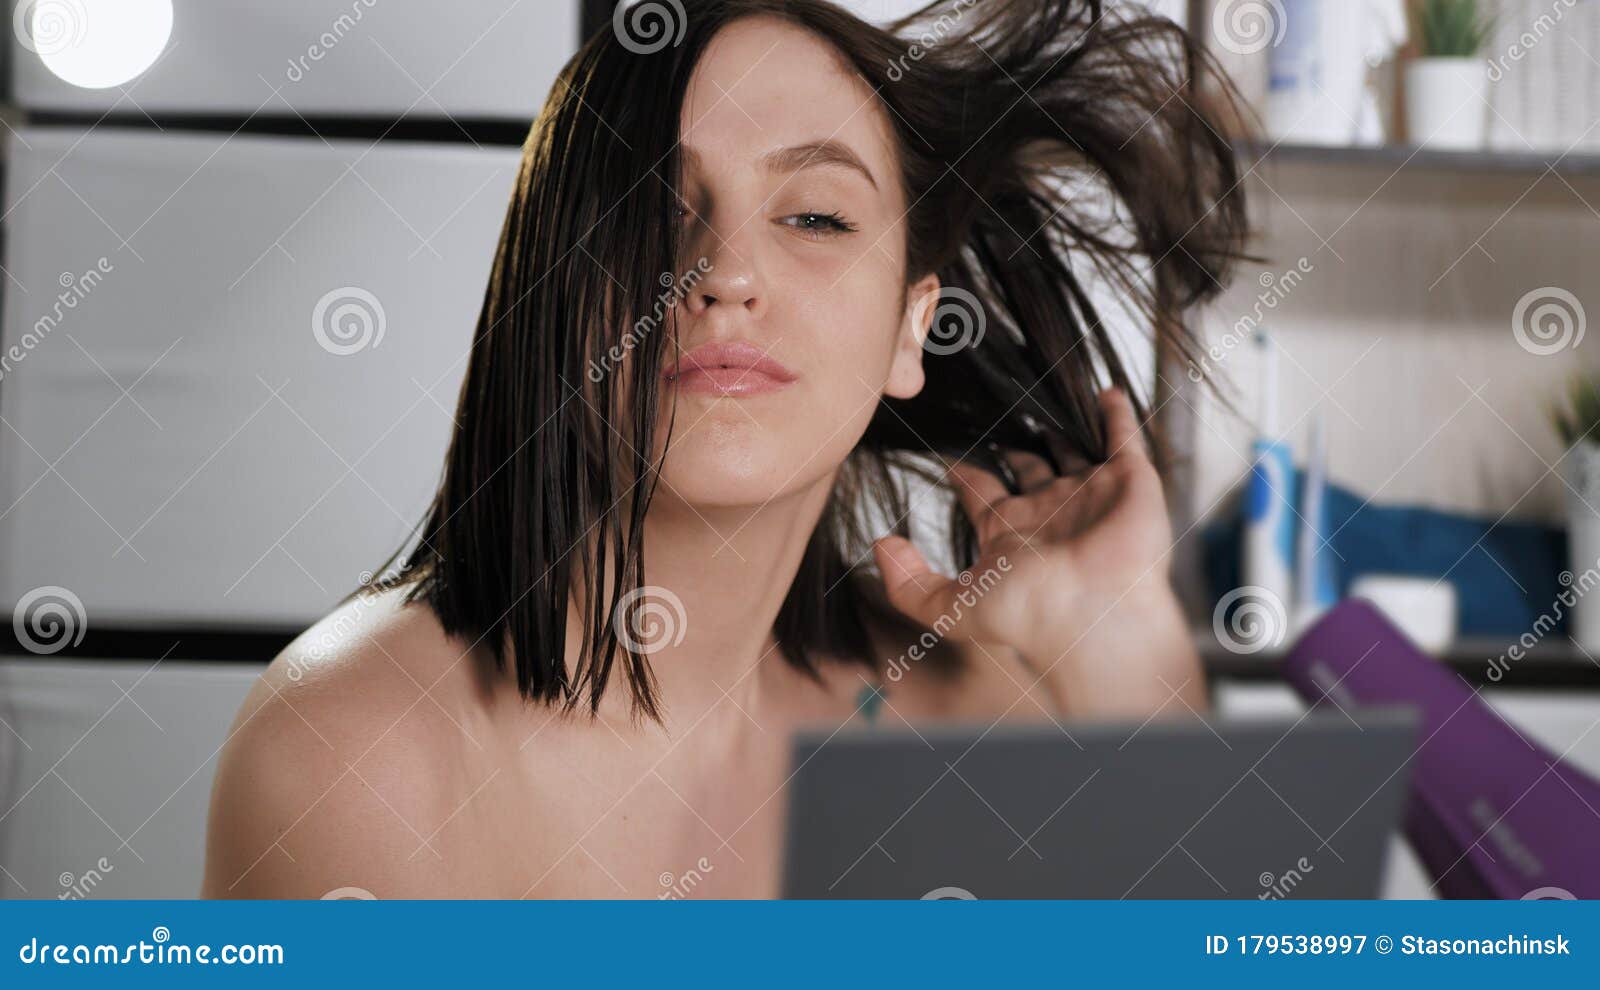 A mão de uma mulher segura um secador de cabelo preto sobre um